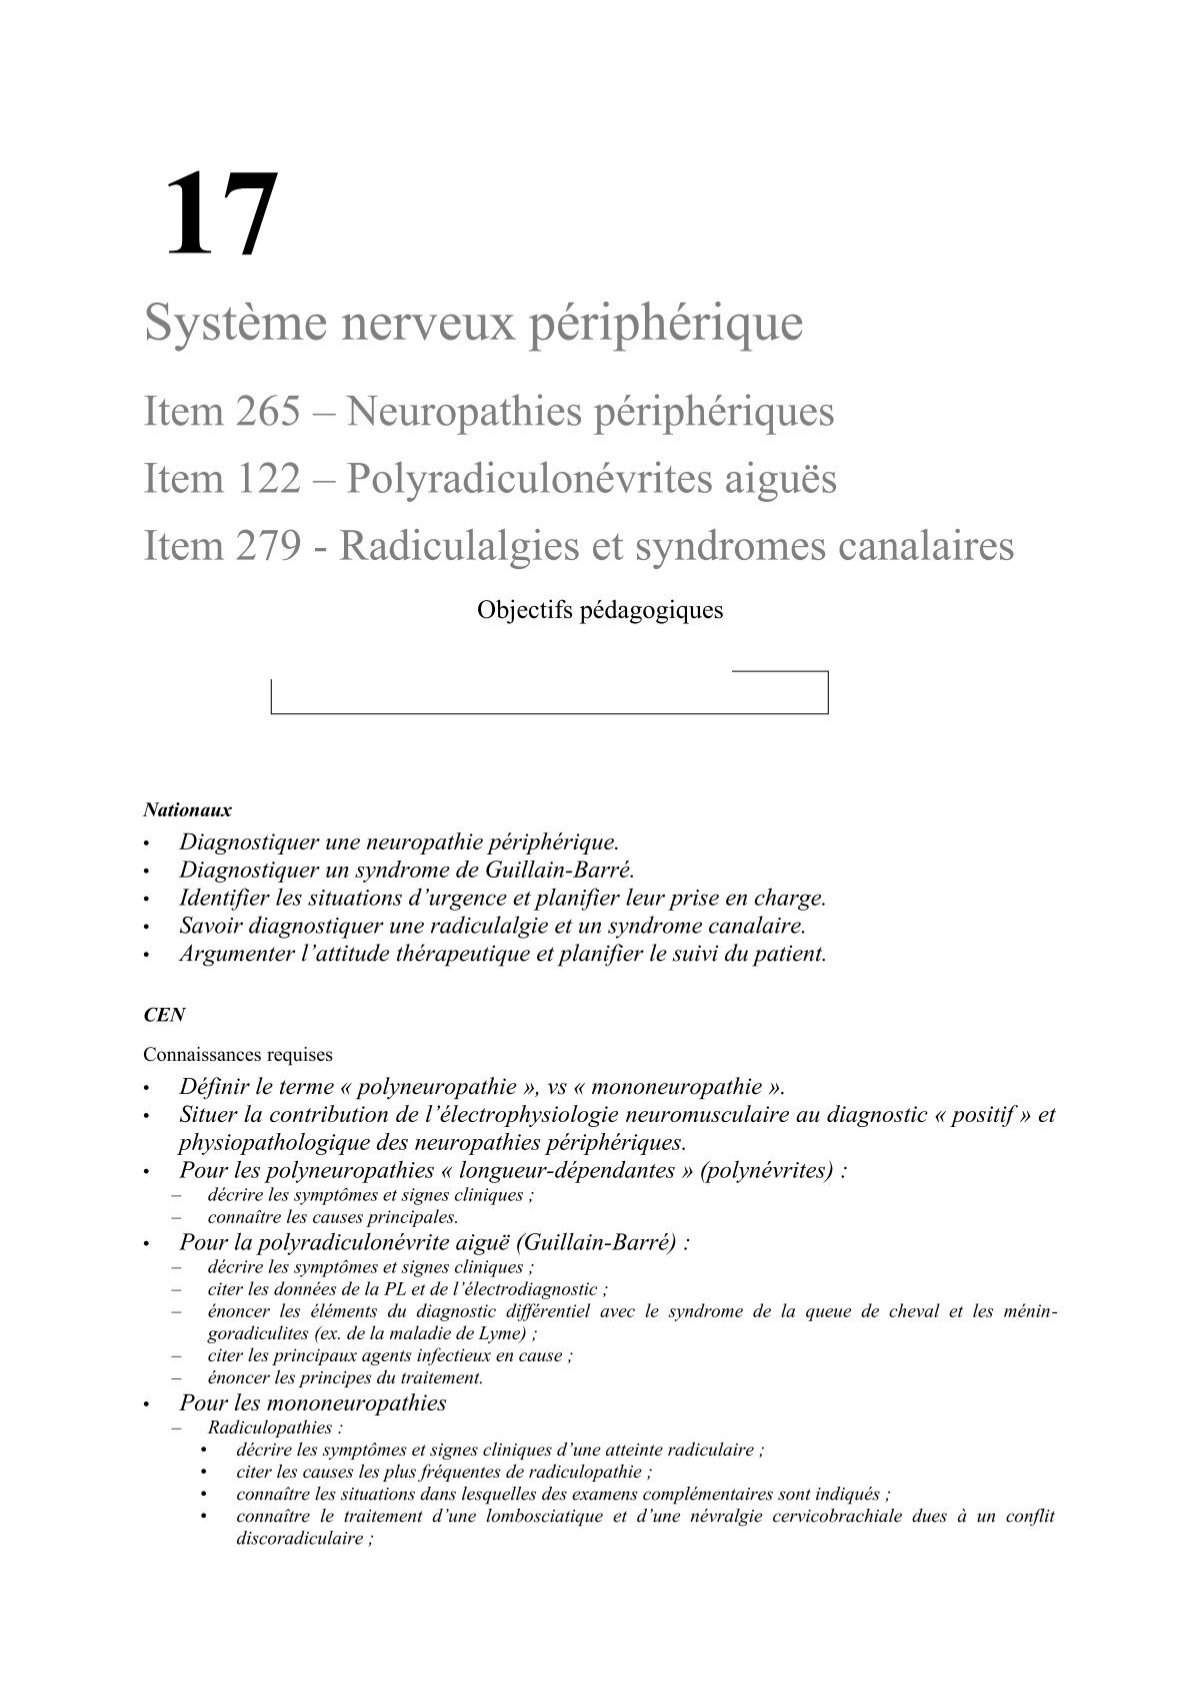 Radiculalgies et syndromes canalaires –– Neuropathies périphériques ––  Polyradiculonévrite aiguë inflammatoire (syndrome de Guillain-Barré)